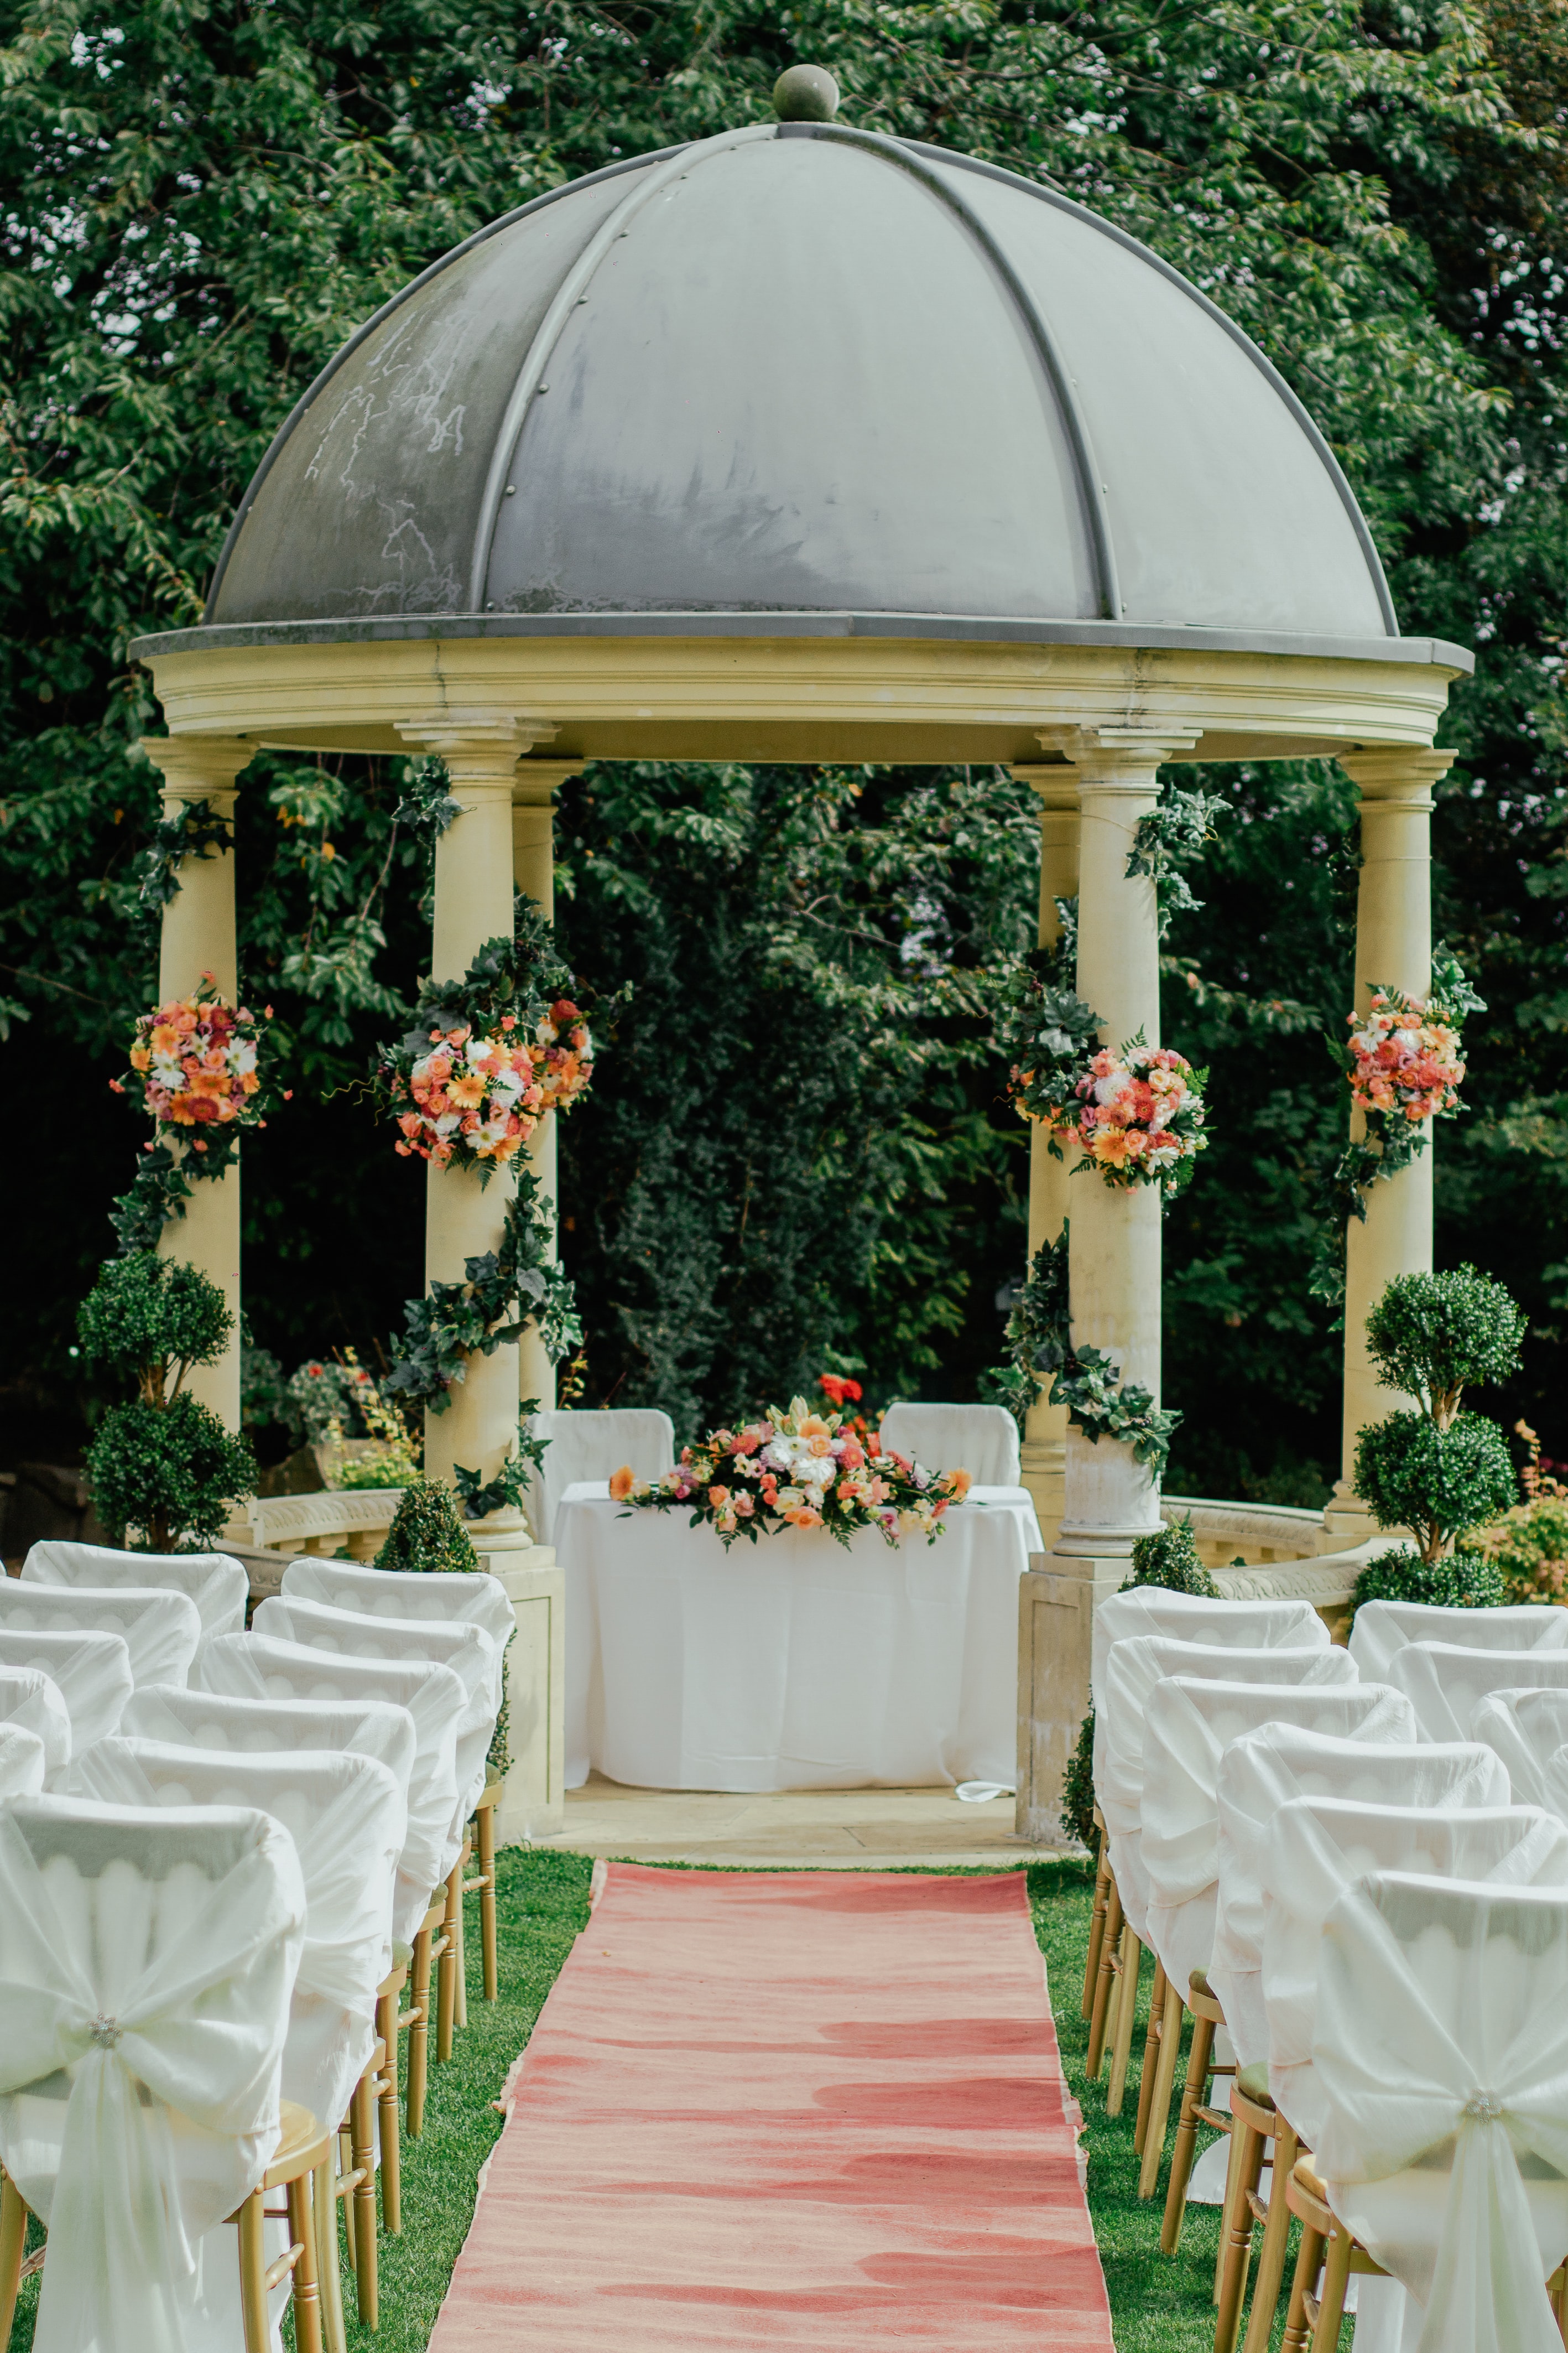 Formation de chaises décorées de manière colorée pour une fête de mariage dans la nature.